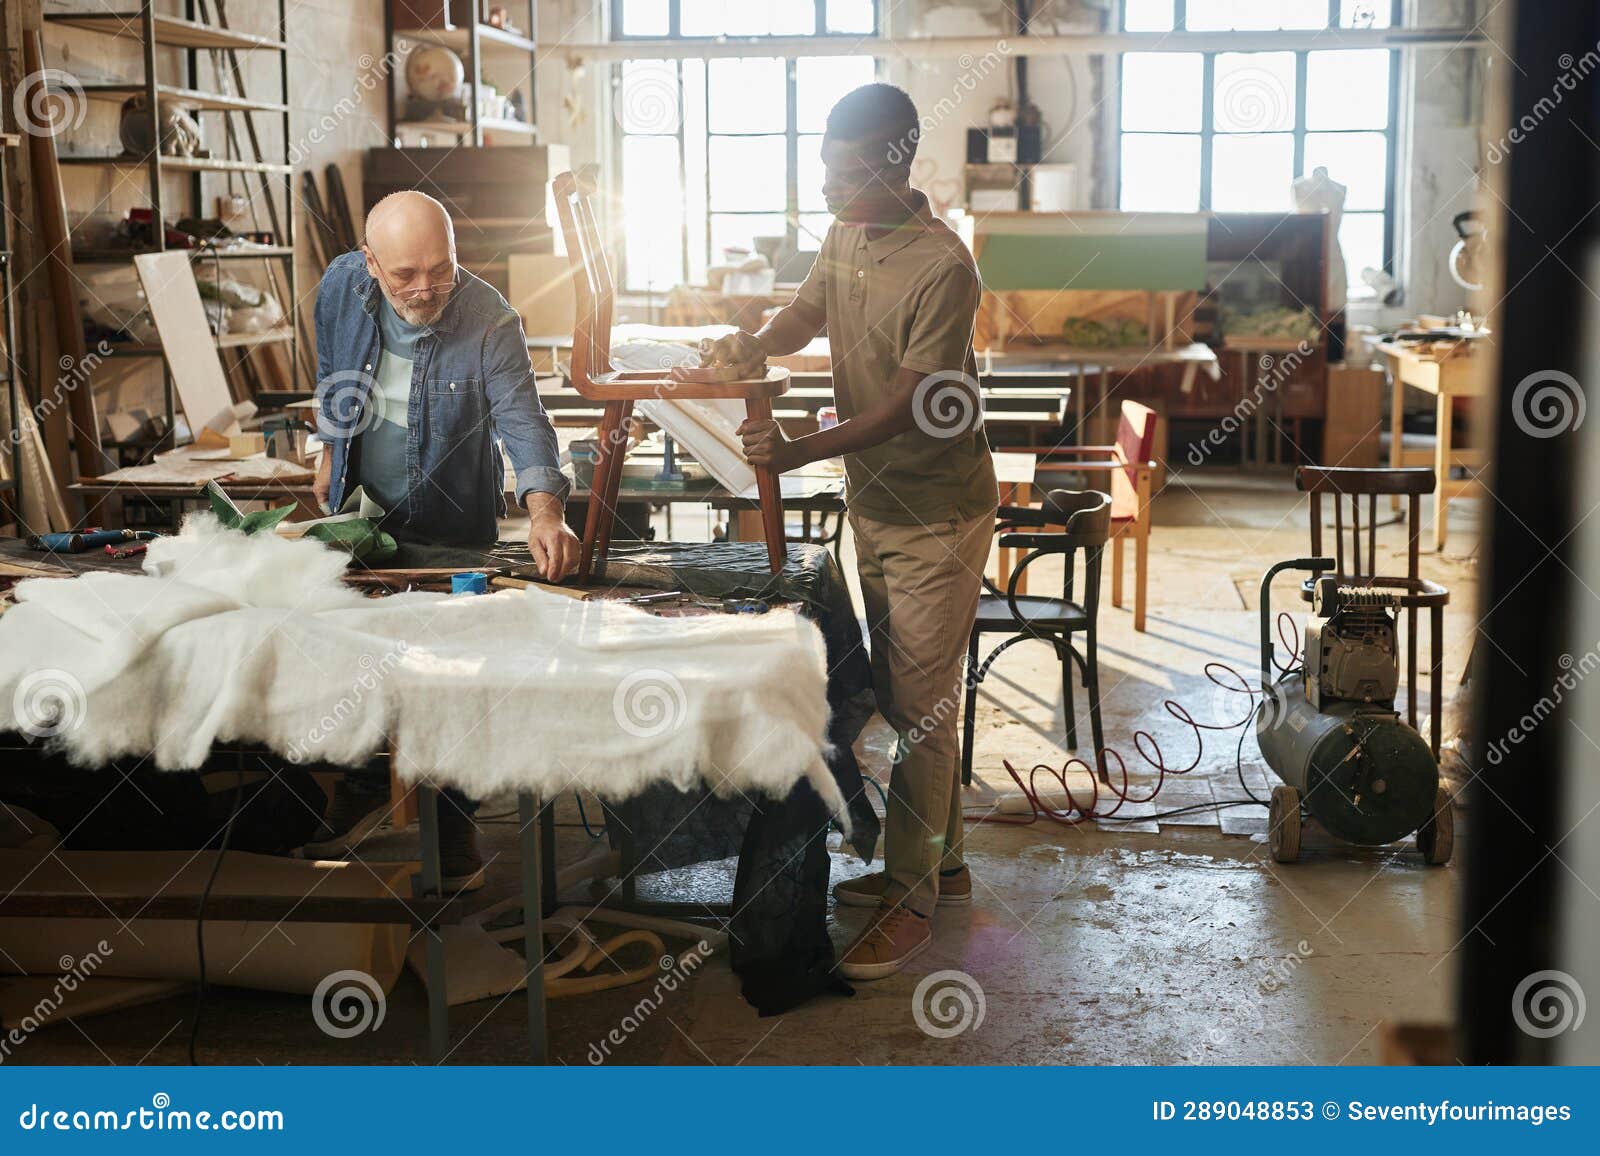 two workers refurbishing furniture in workshop